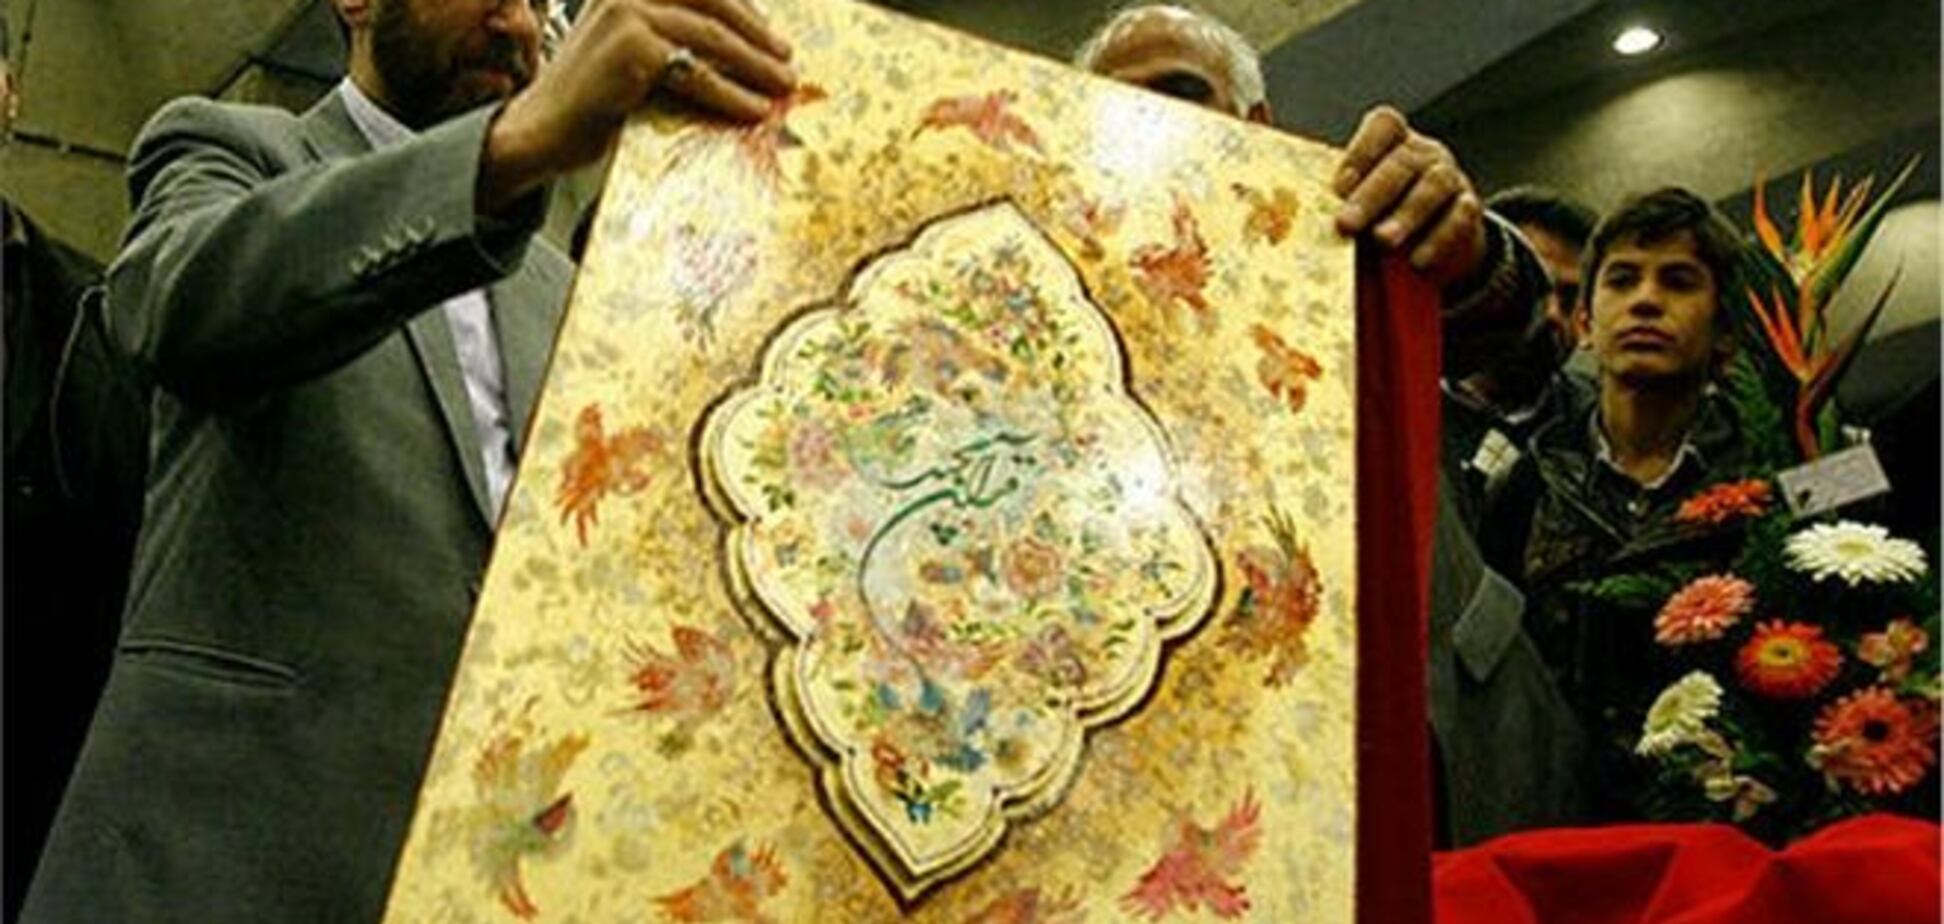 В Иране изготовлен крупнейший в мире 'золотой' Коран весом 80 кг